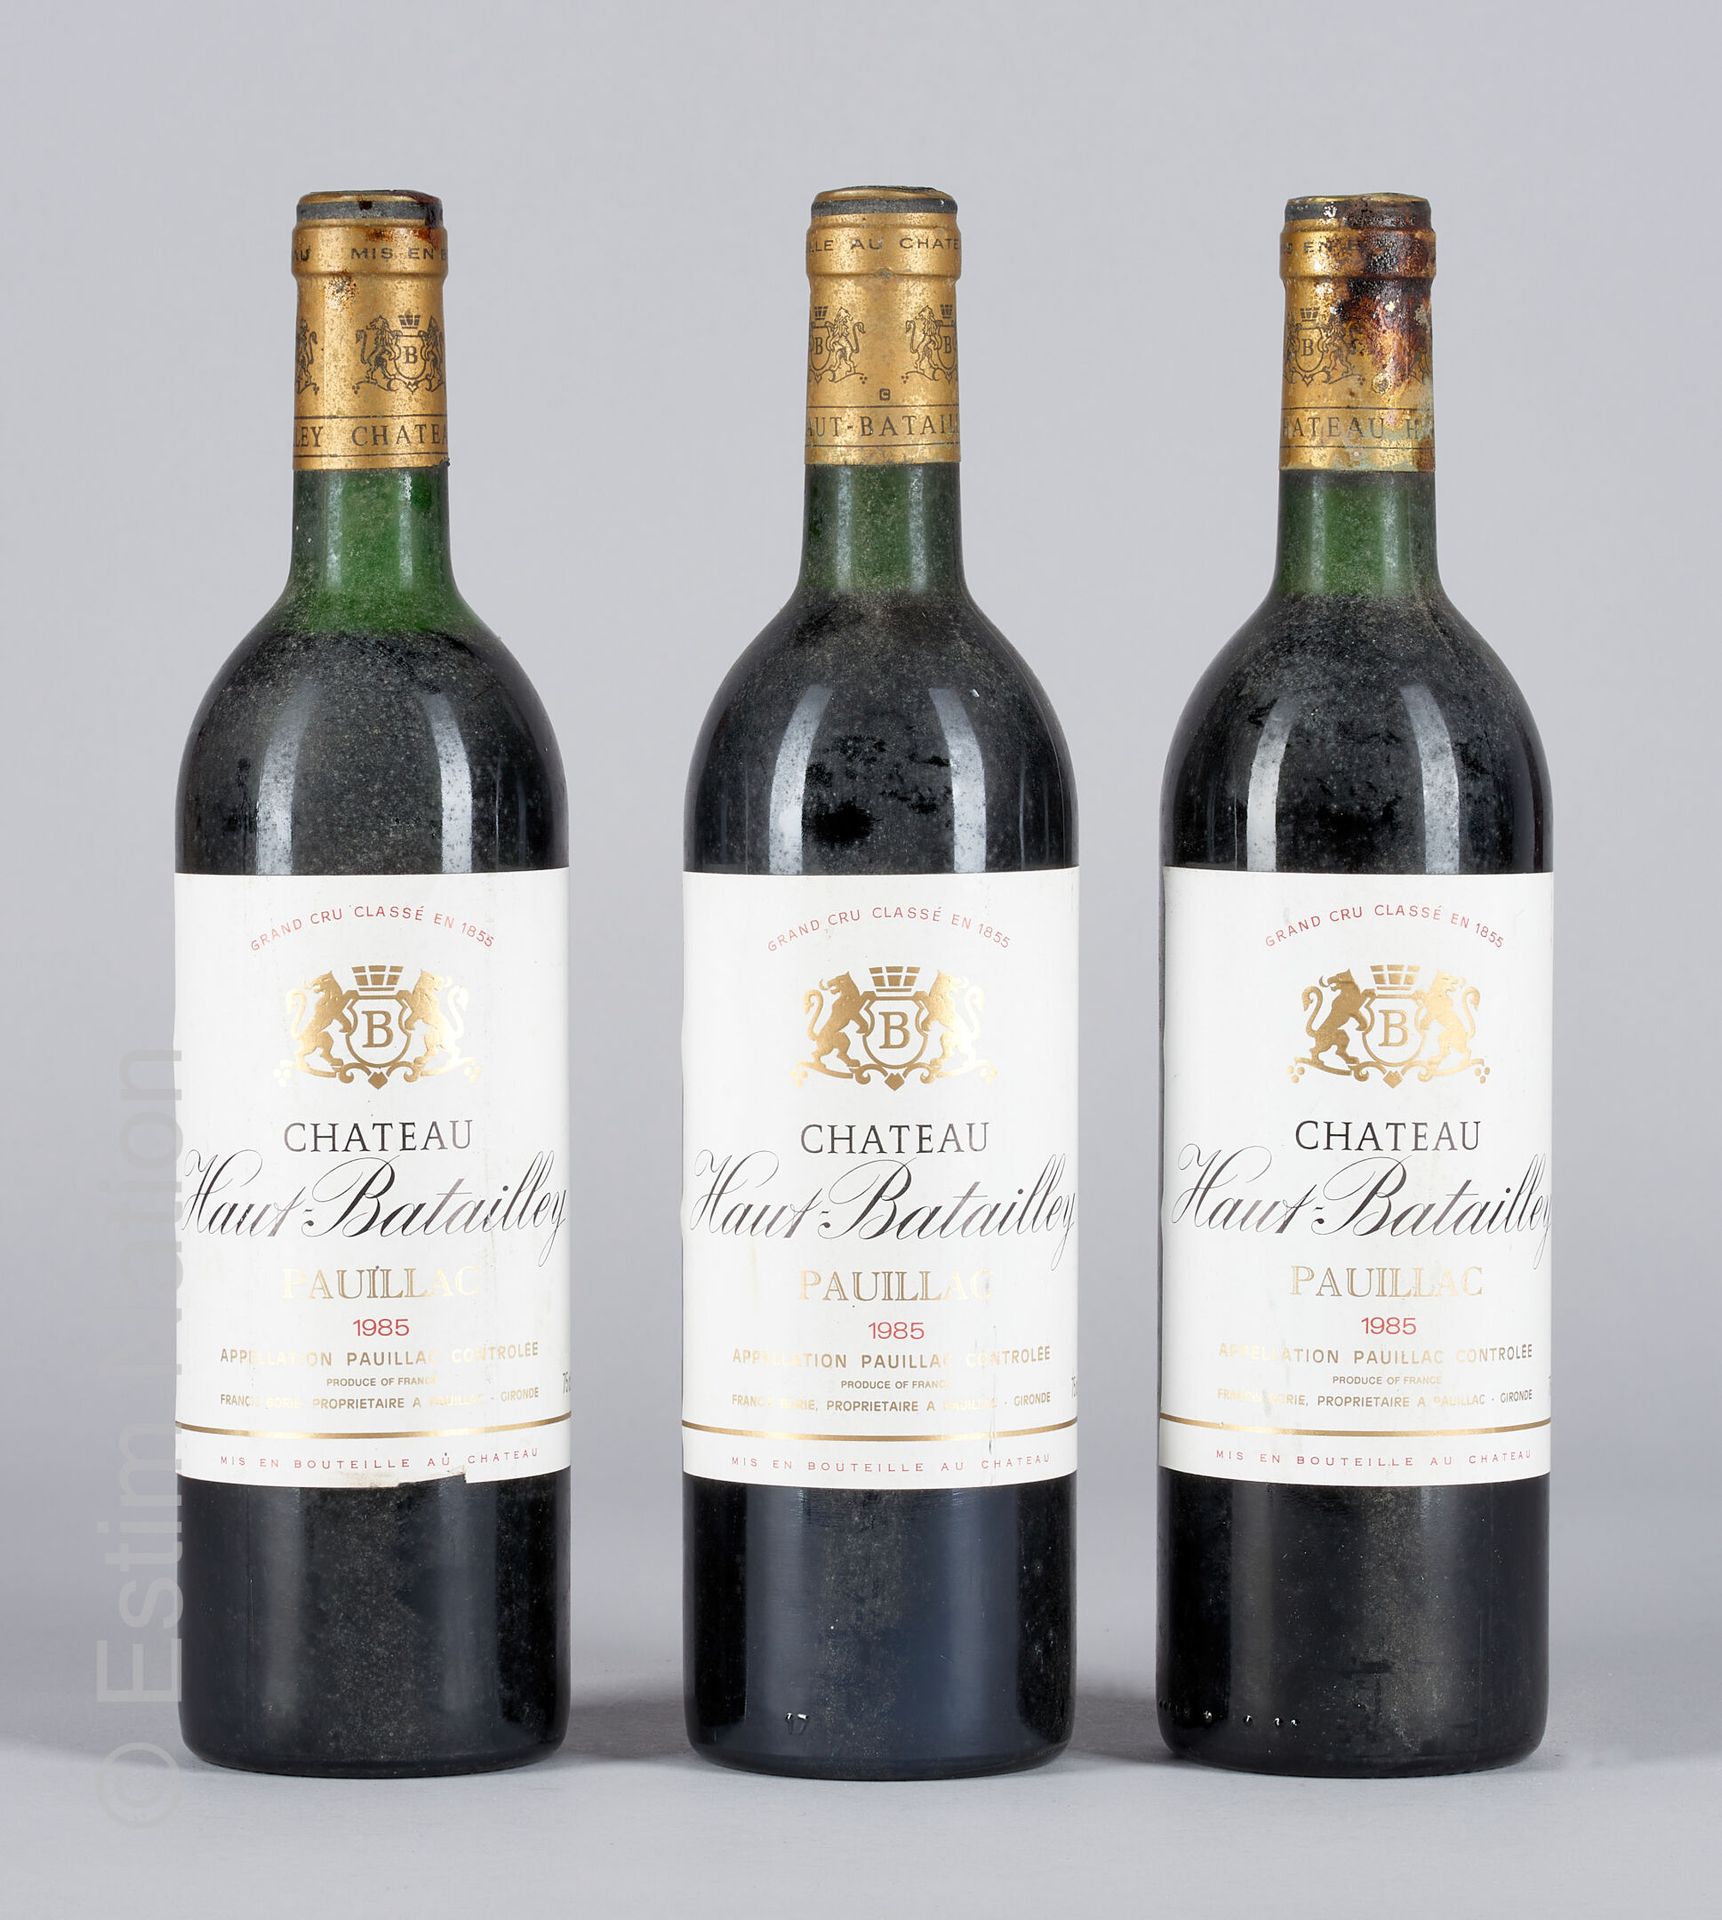 BORDEAUX 3 botellas Château Haut Battailley 1985 Pauillac

(N. 2 tlb, E. Lm)